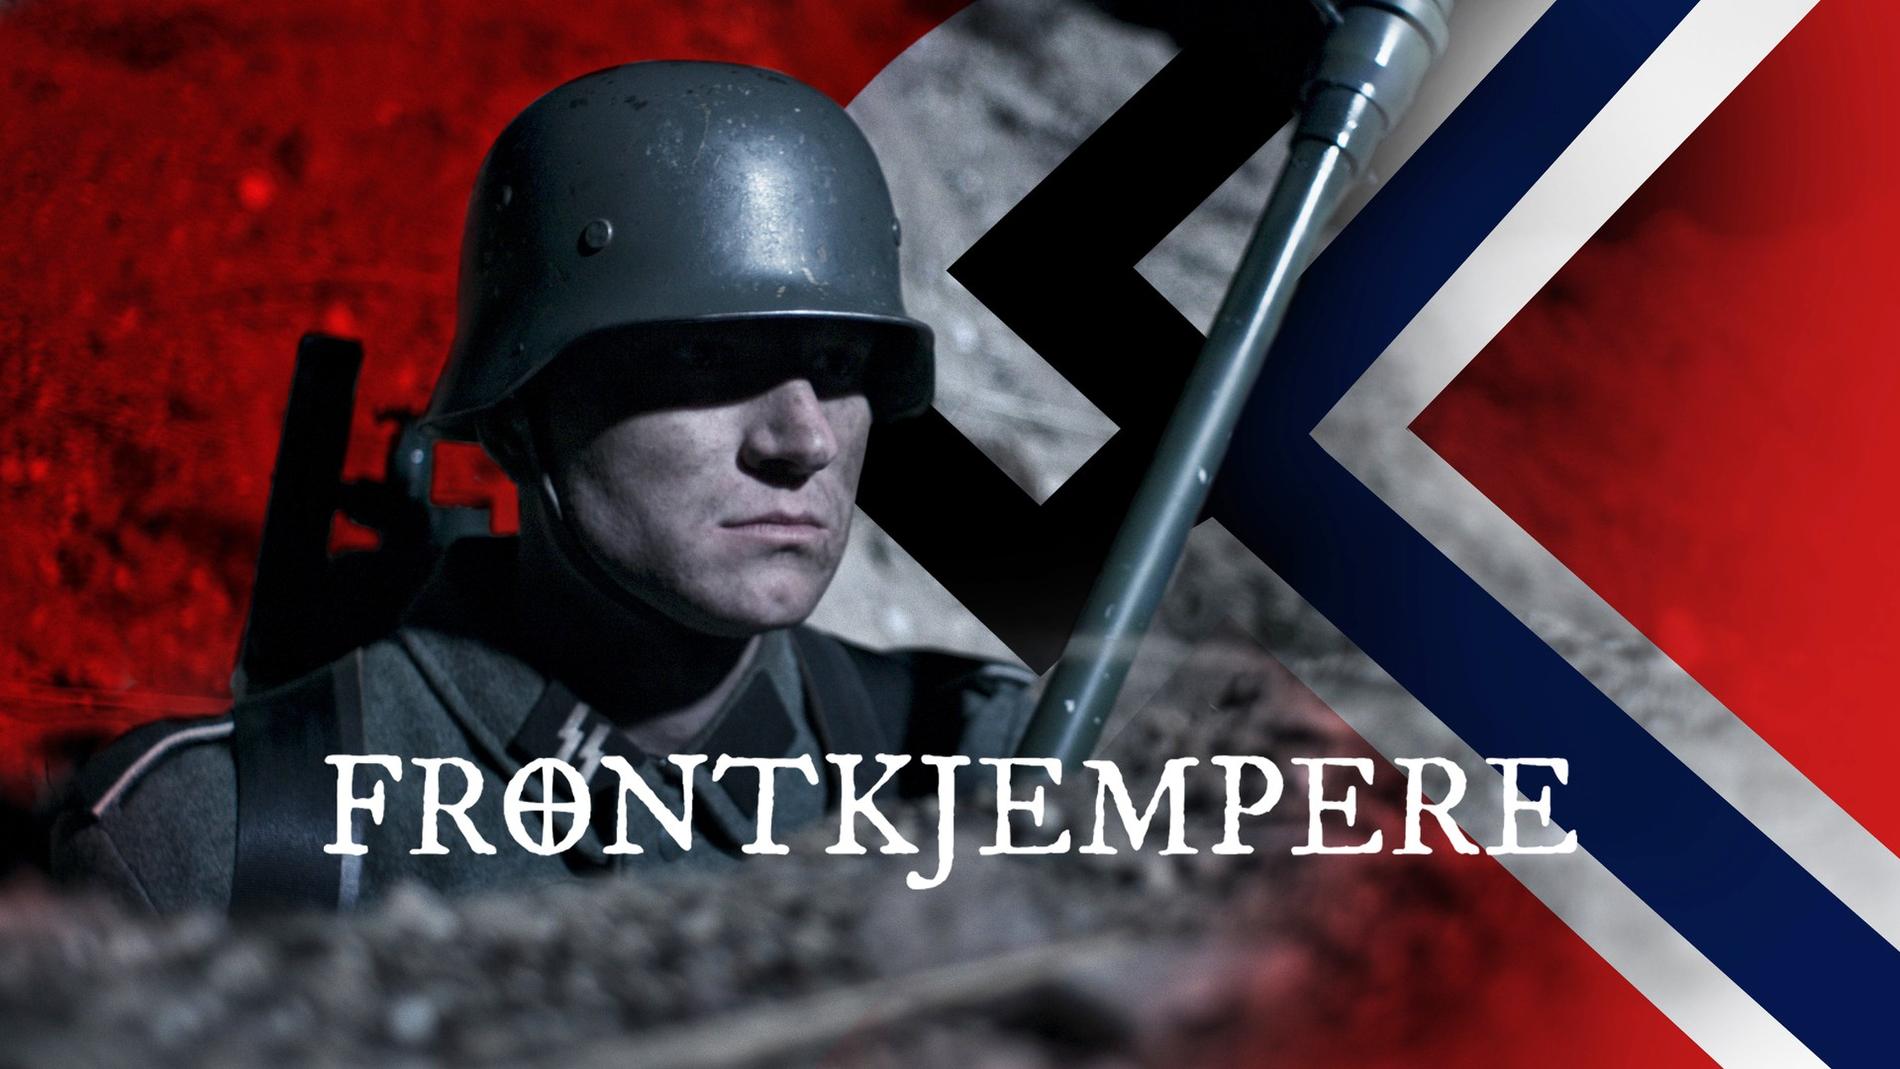 NRK:s nya dokumentärserie om norska SS-soldater, ”Frontkjempere”, får kritik av historiker och av ryska utrikesdepartementet.